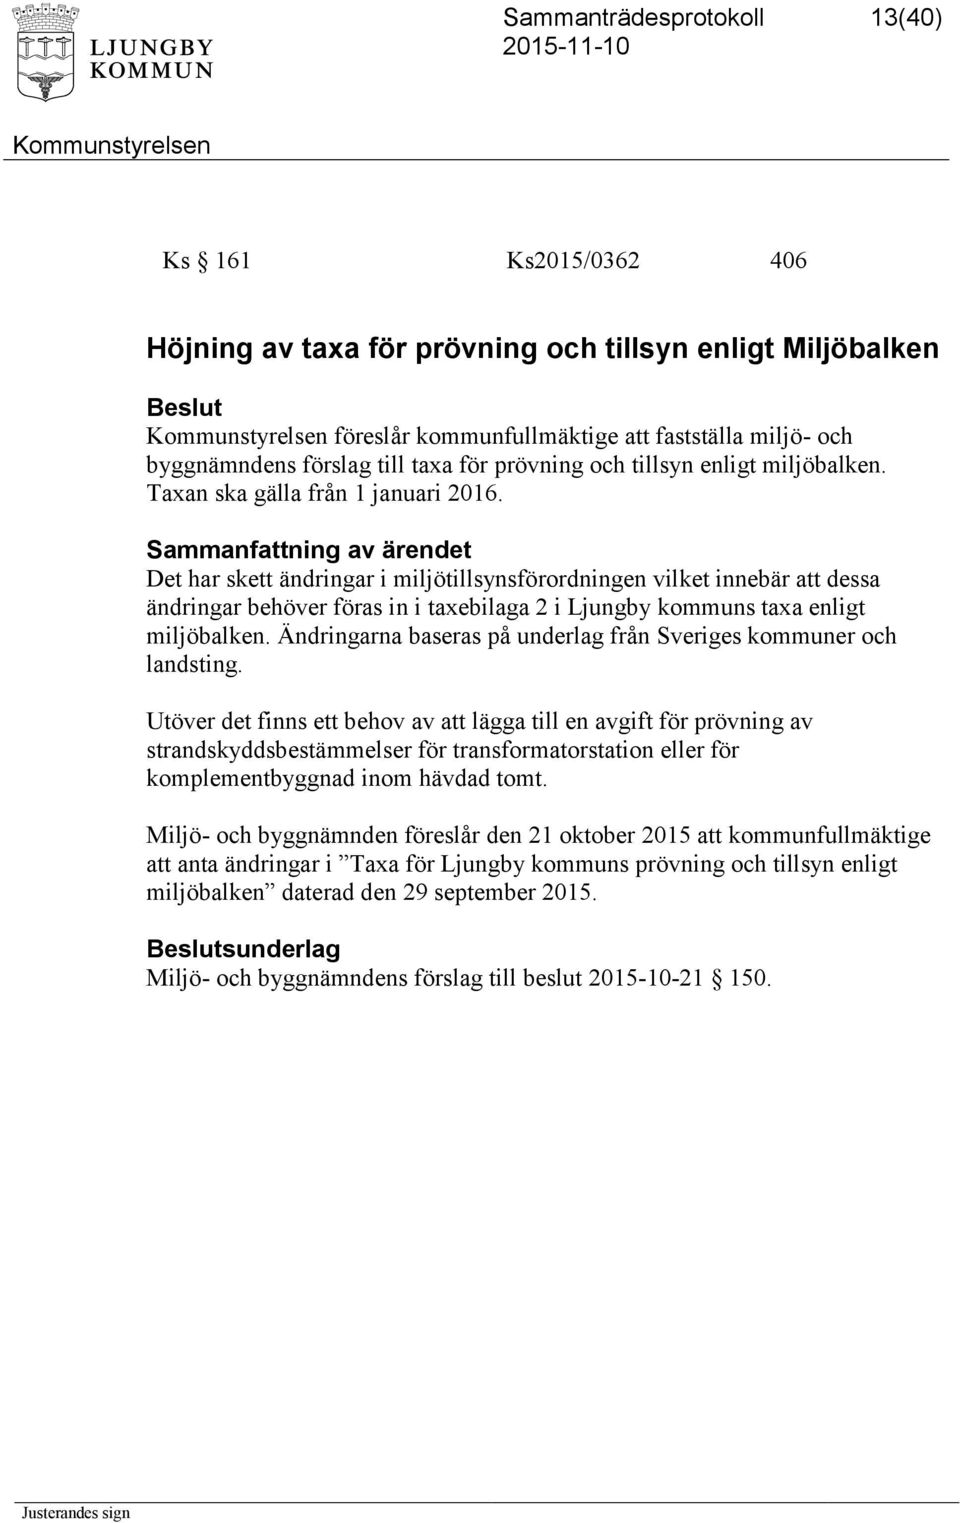 Det har skett ändringar i miljötillsynsförordningen vilket innebär att dessa ändringar behöver föras in i taxebilaga 2 i Ljungby kommuns taxa enligt miljöbalken.